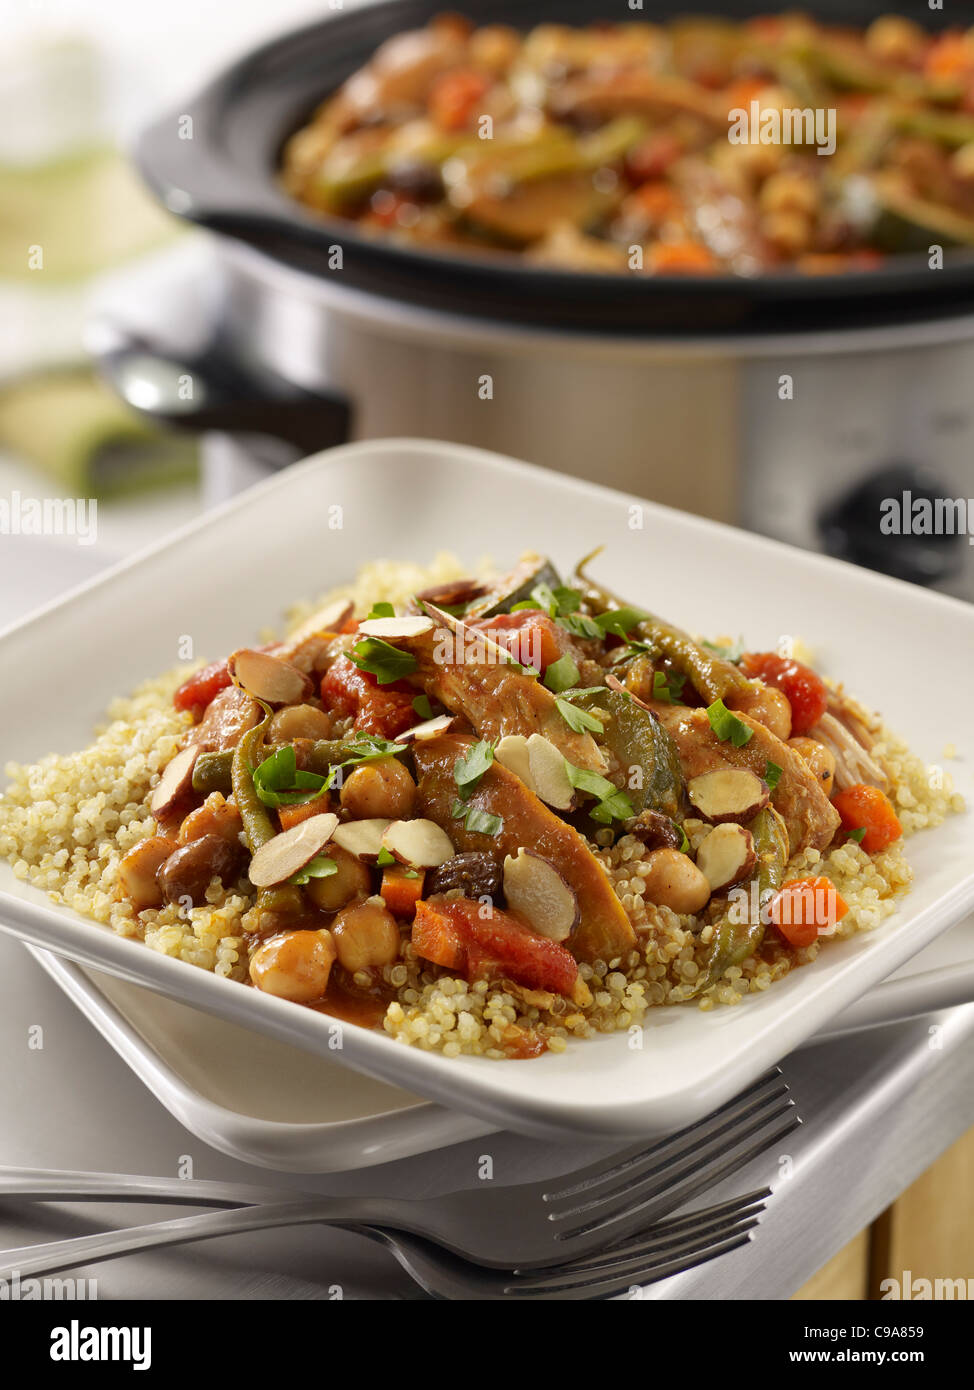 Ragoût de poulet marocain servi plus de grains dans une cuisine avec un pot de cruche dans l'arrière-plan Banque D'Images